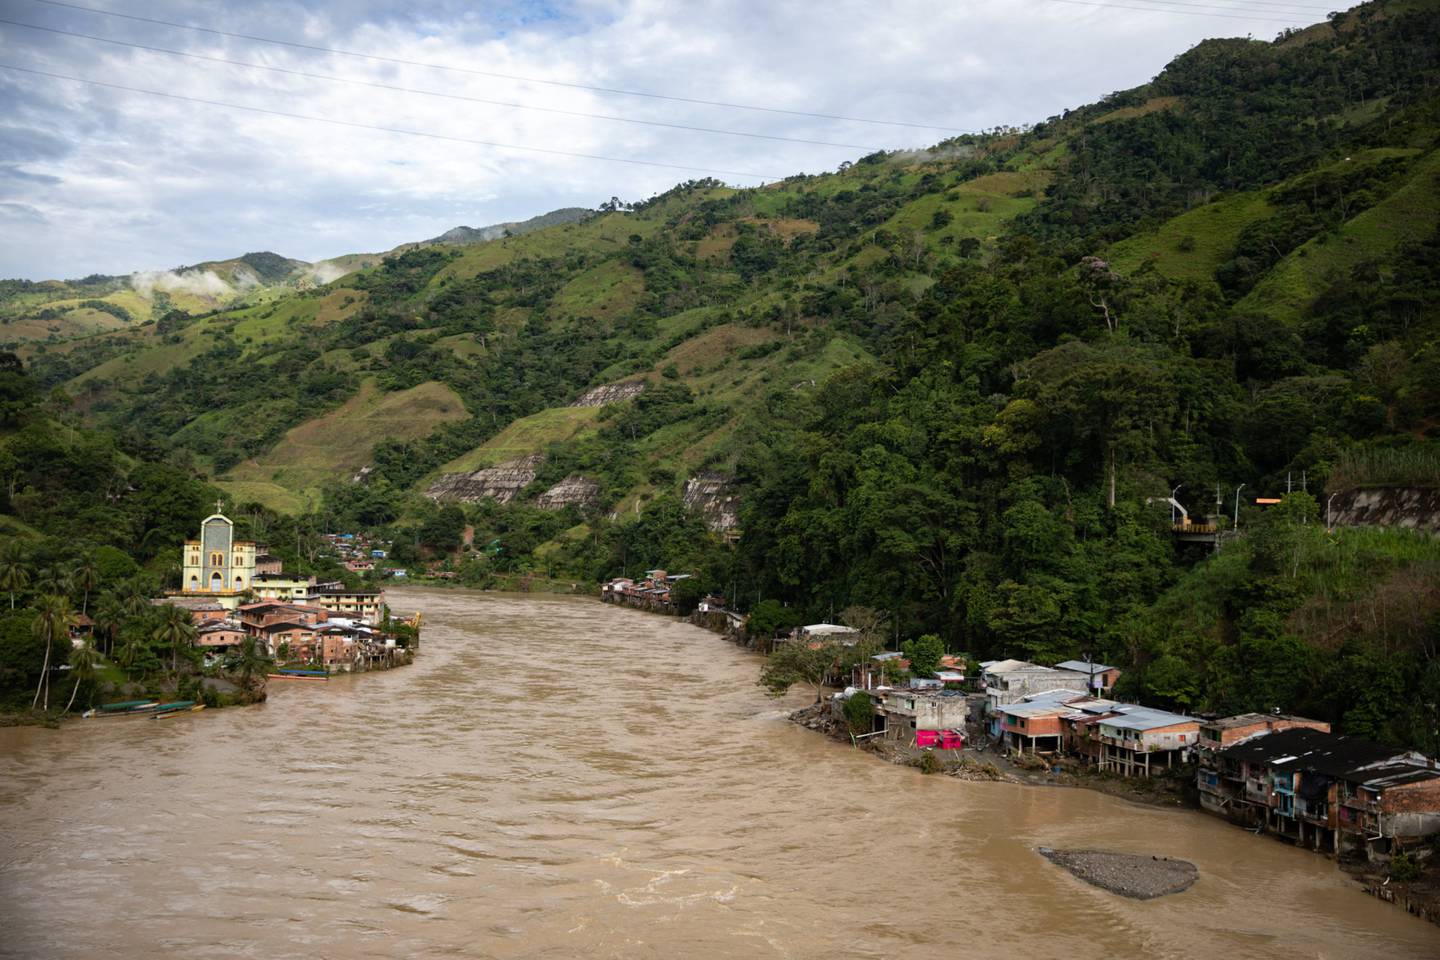 Las casas quedaron en ruinas después de las inundaciones del río Cauca, causadas por daños estructurales a la represa hidroeléctrica Hidroituango, en Puerto Valdivia, departamento de Antioquia, Colombia, el domingo 20 de mayo de 2018.